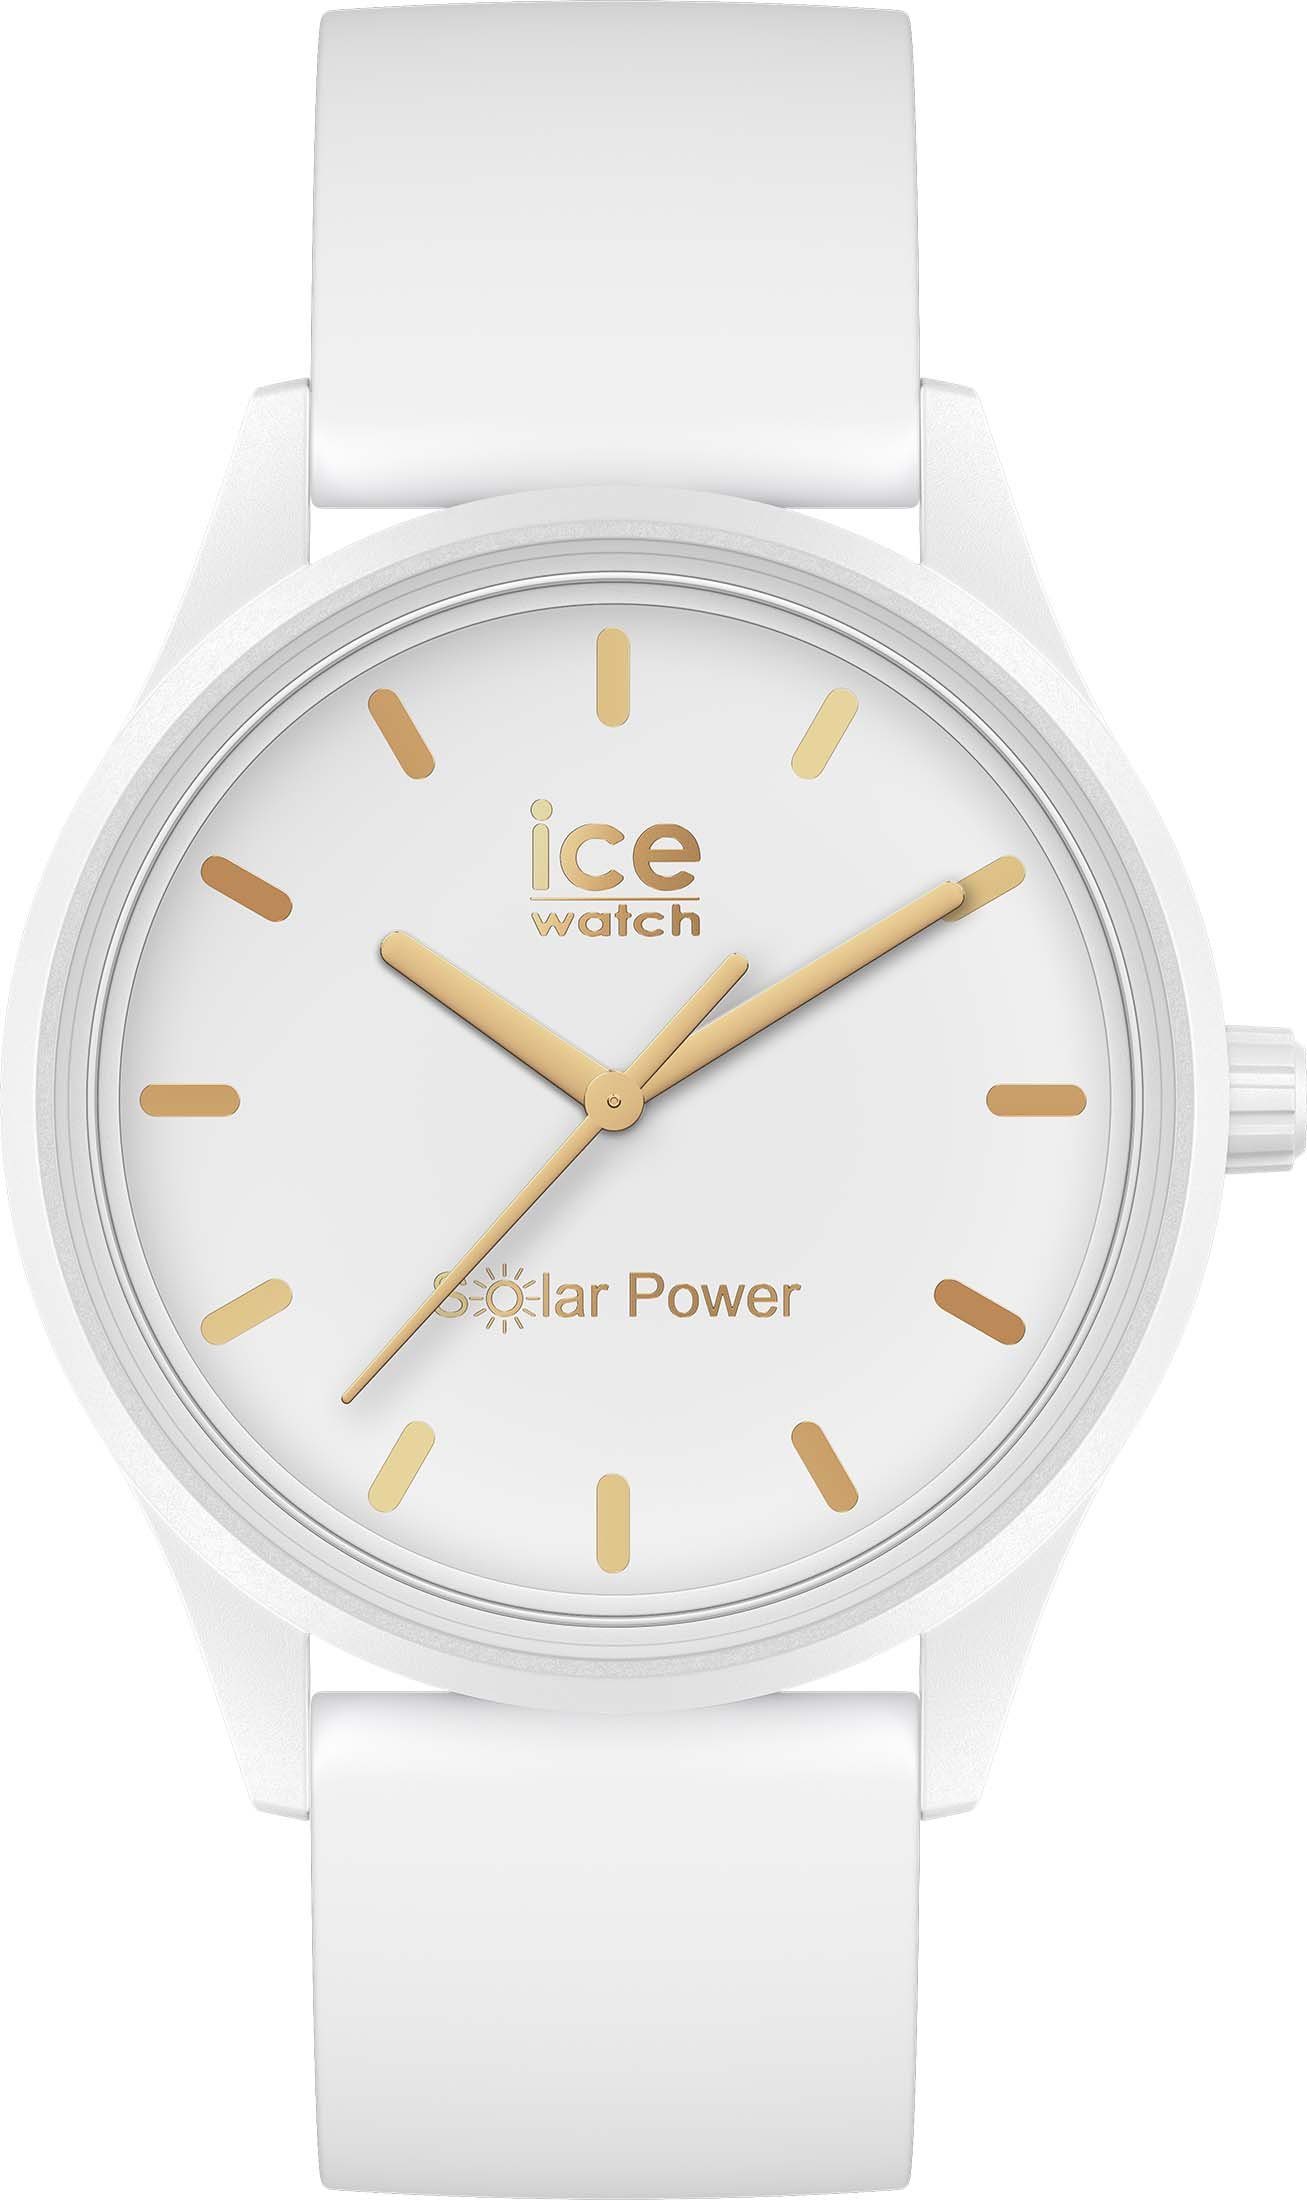 weiß Solaruhr 020301 ice-watch gold Solar power-White ICE M,